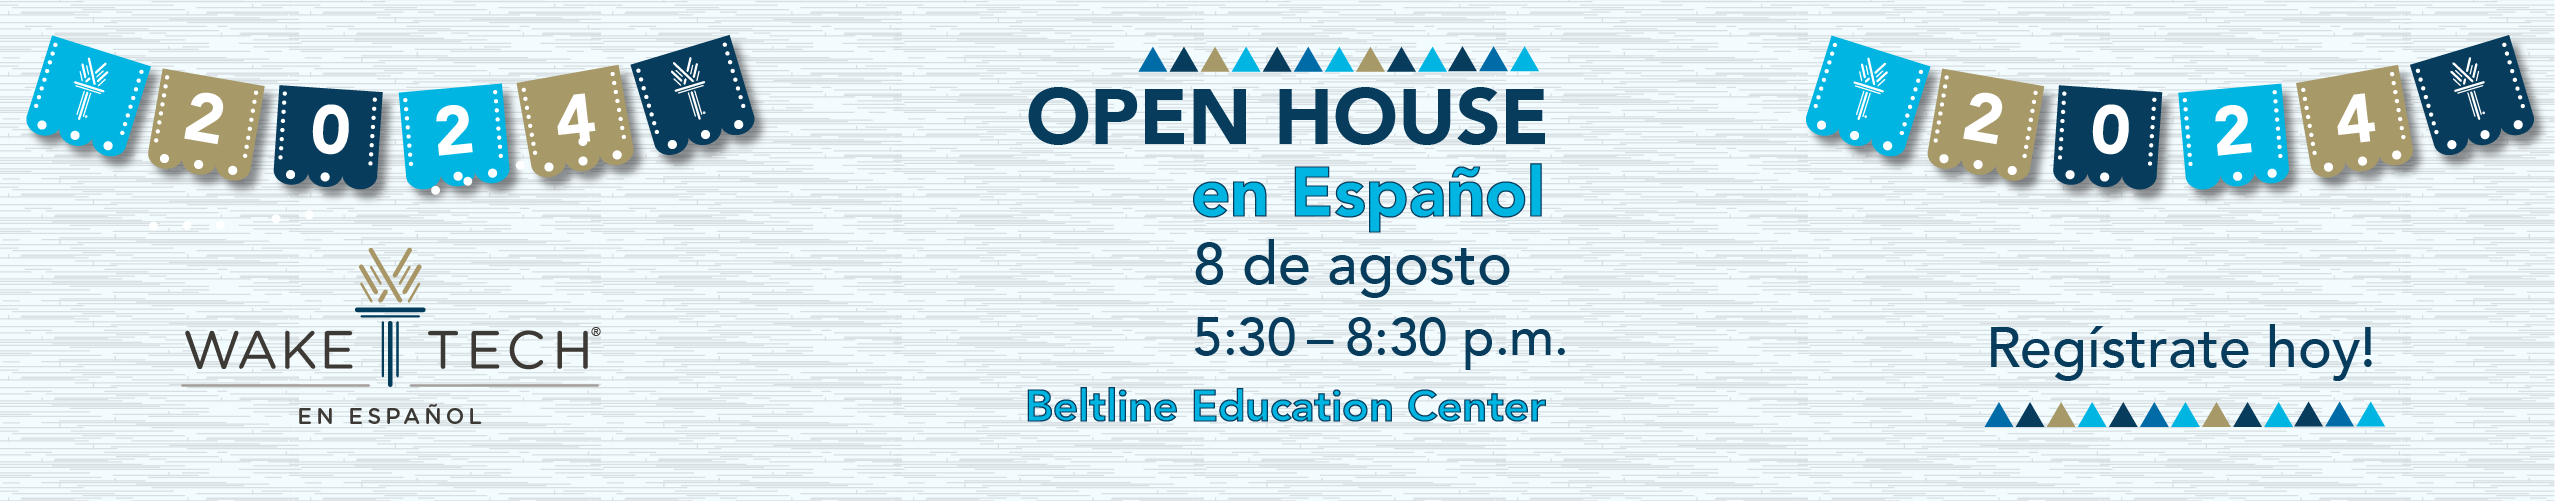 Open House en espanol graphics